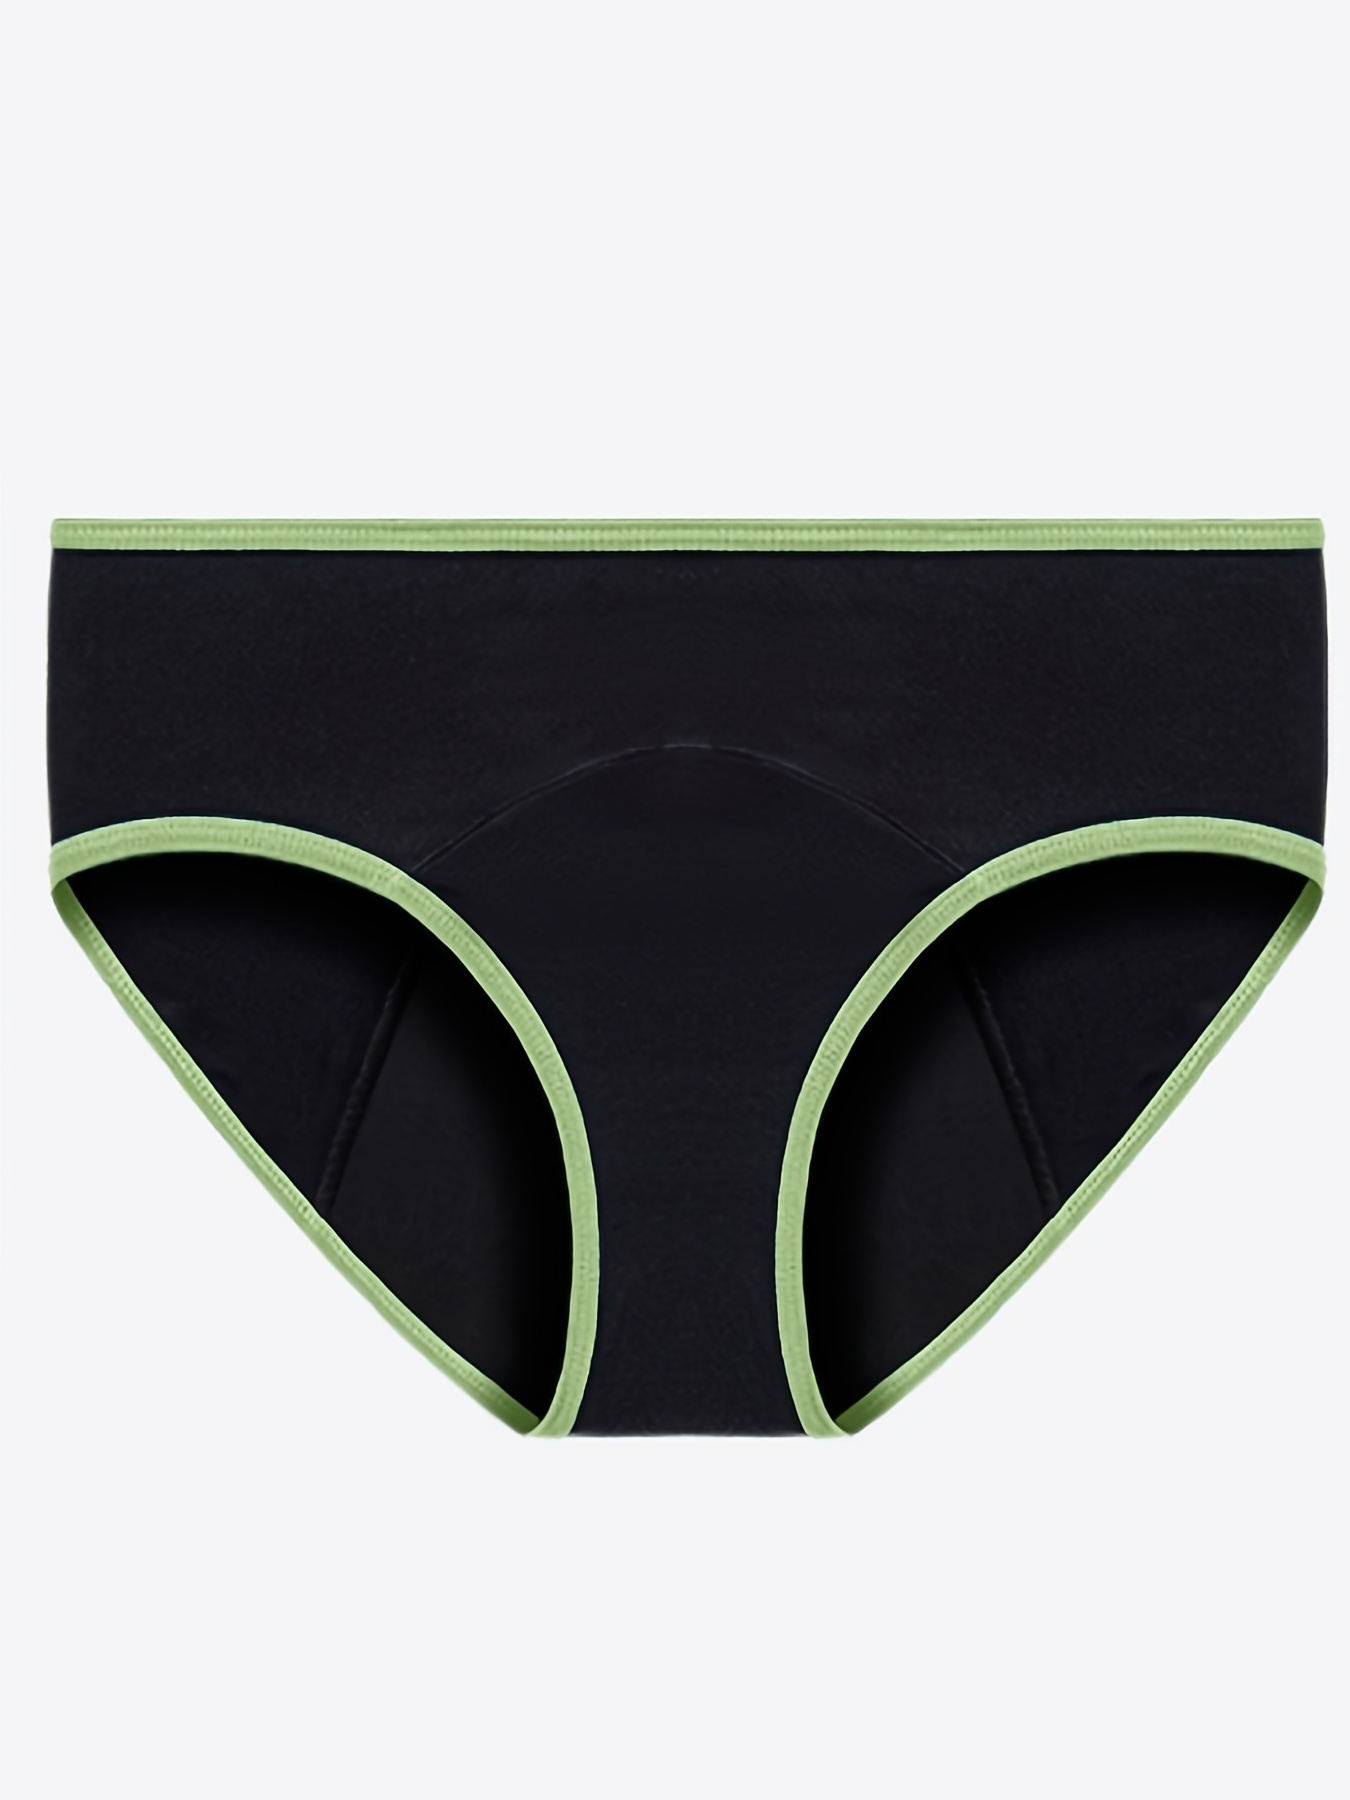 Men's Leak Proof Underwear - M66